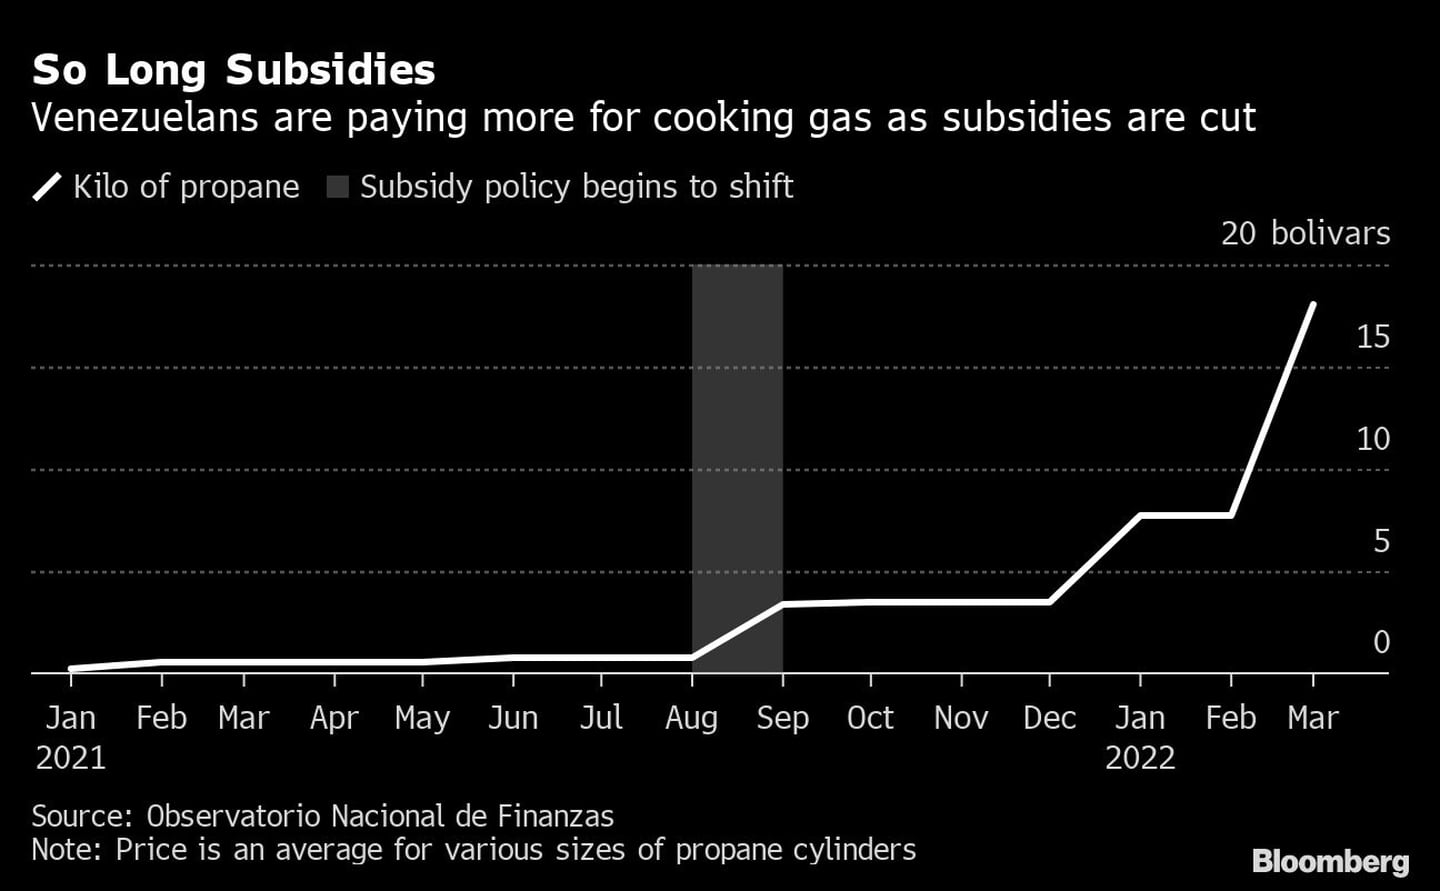 Los venezolanos están pagando más por el gas para cocinar a medida que se reducen los subsidiosdfd